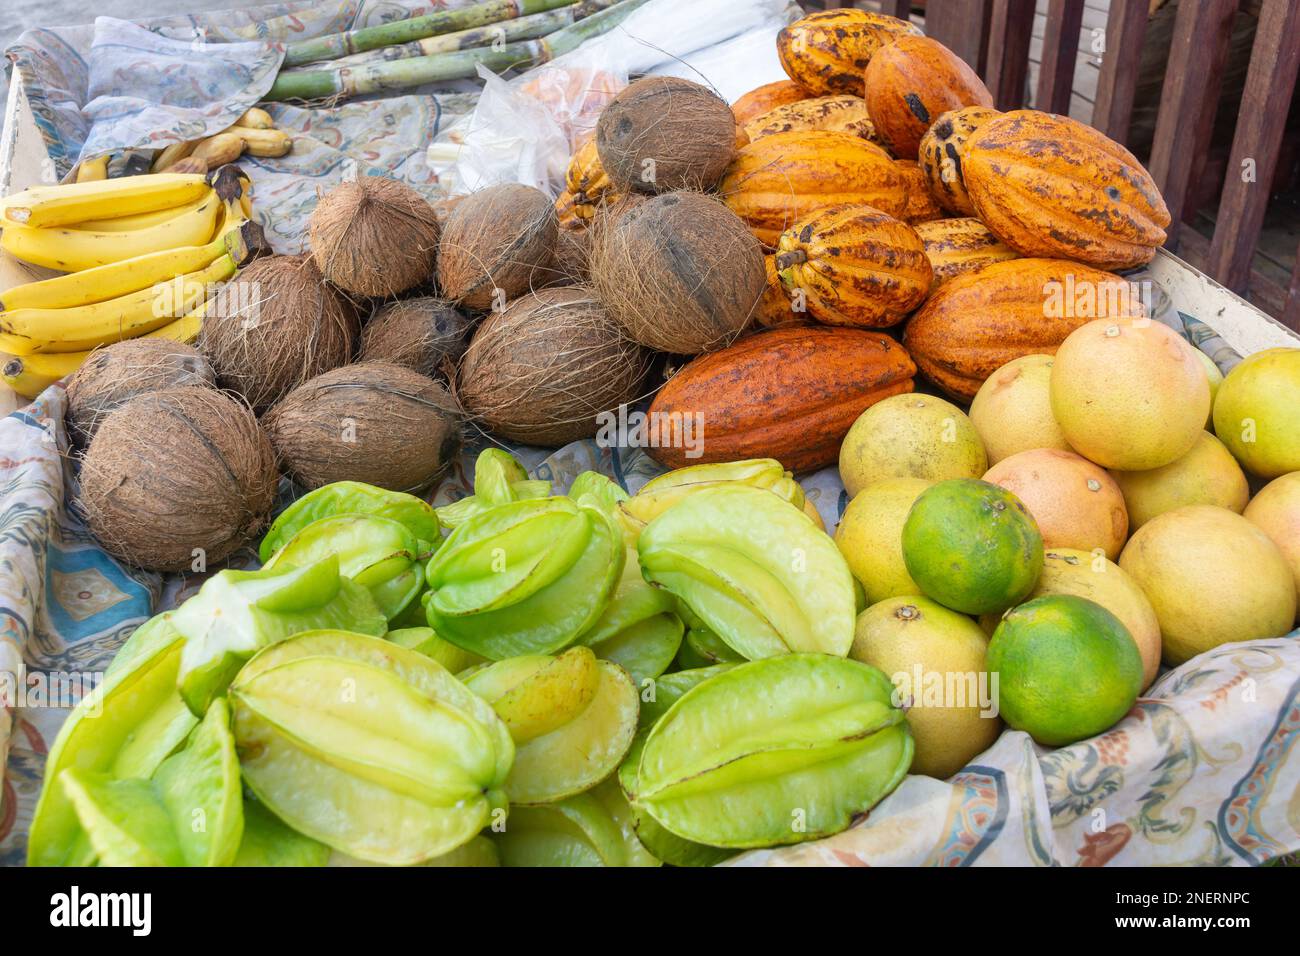 Selección de frutas tropicales en el puesto de carretera, Soufrière, Soufrière District, Santa Lucía, Antillas Menores, Caribe Foto de stock